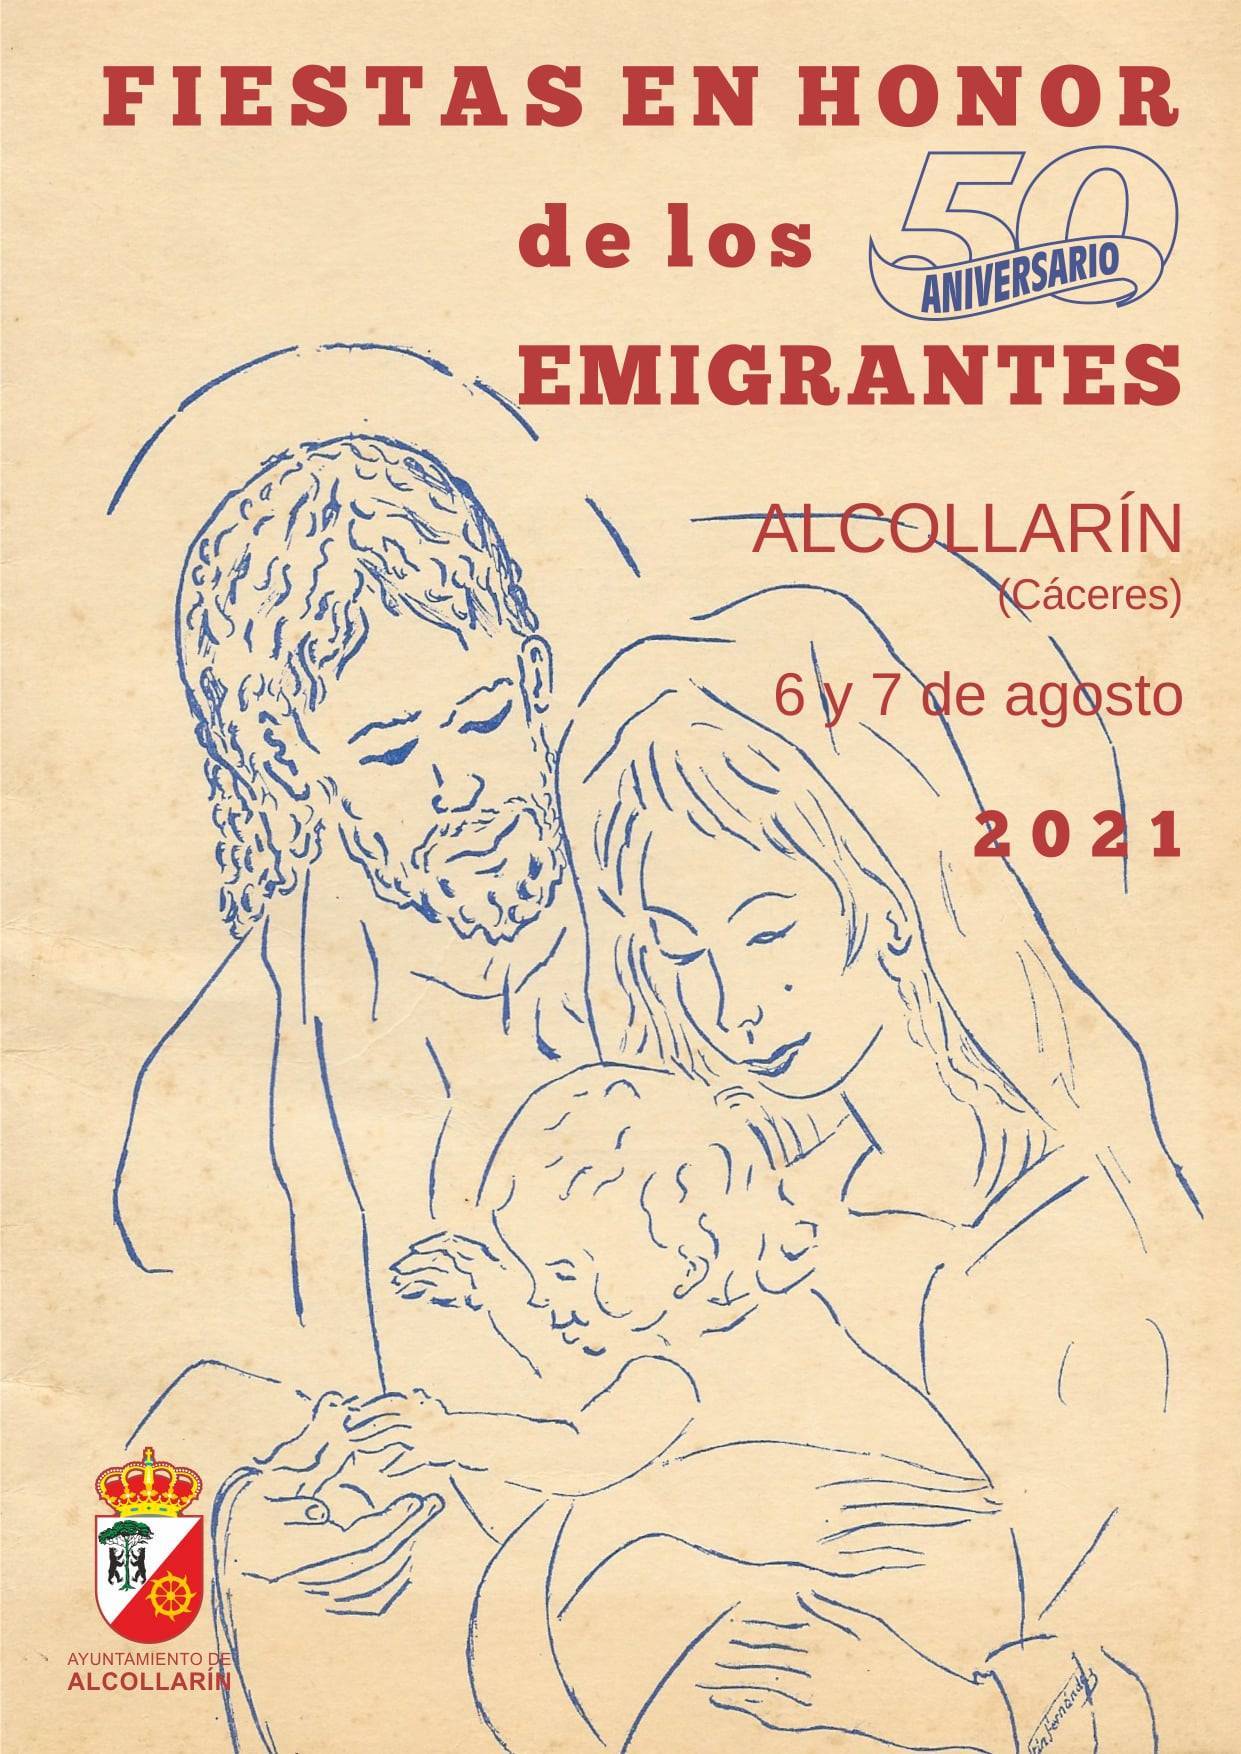 Fiestas del emigrante (2021) - Alcollarín (Cáceres)